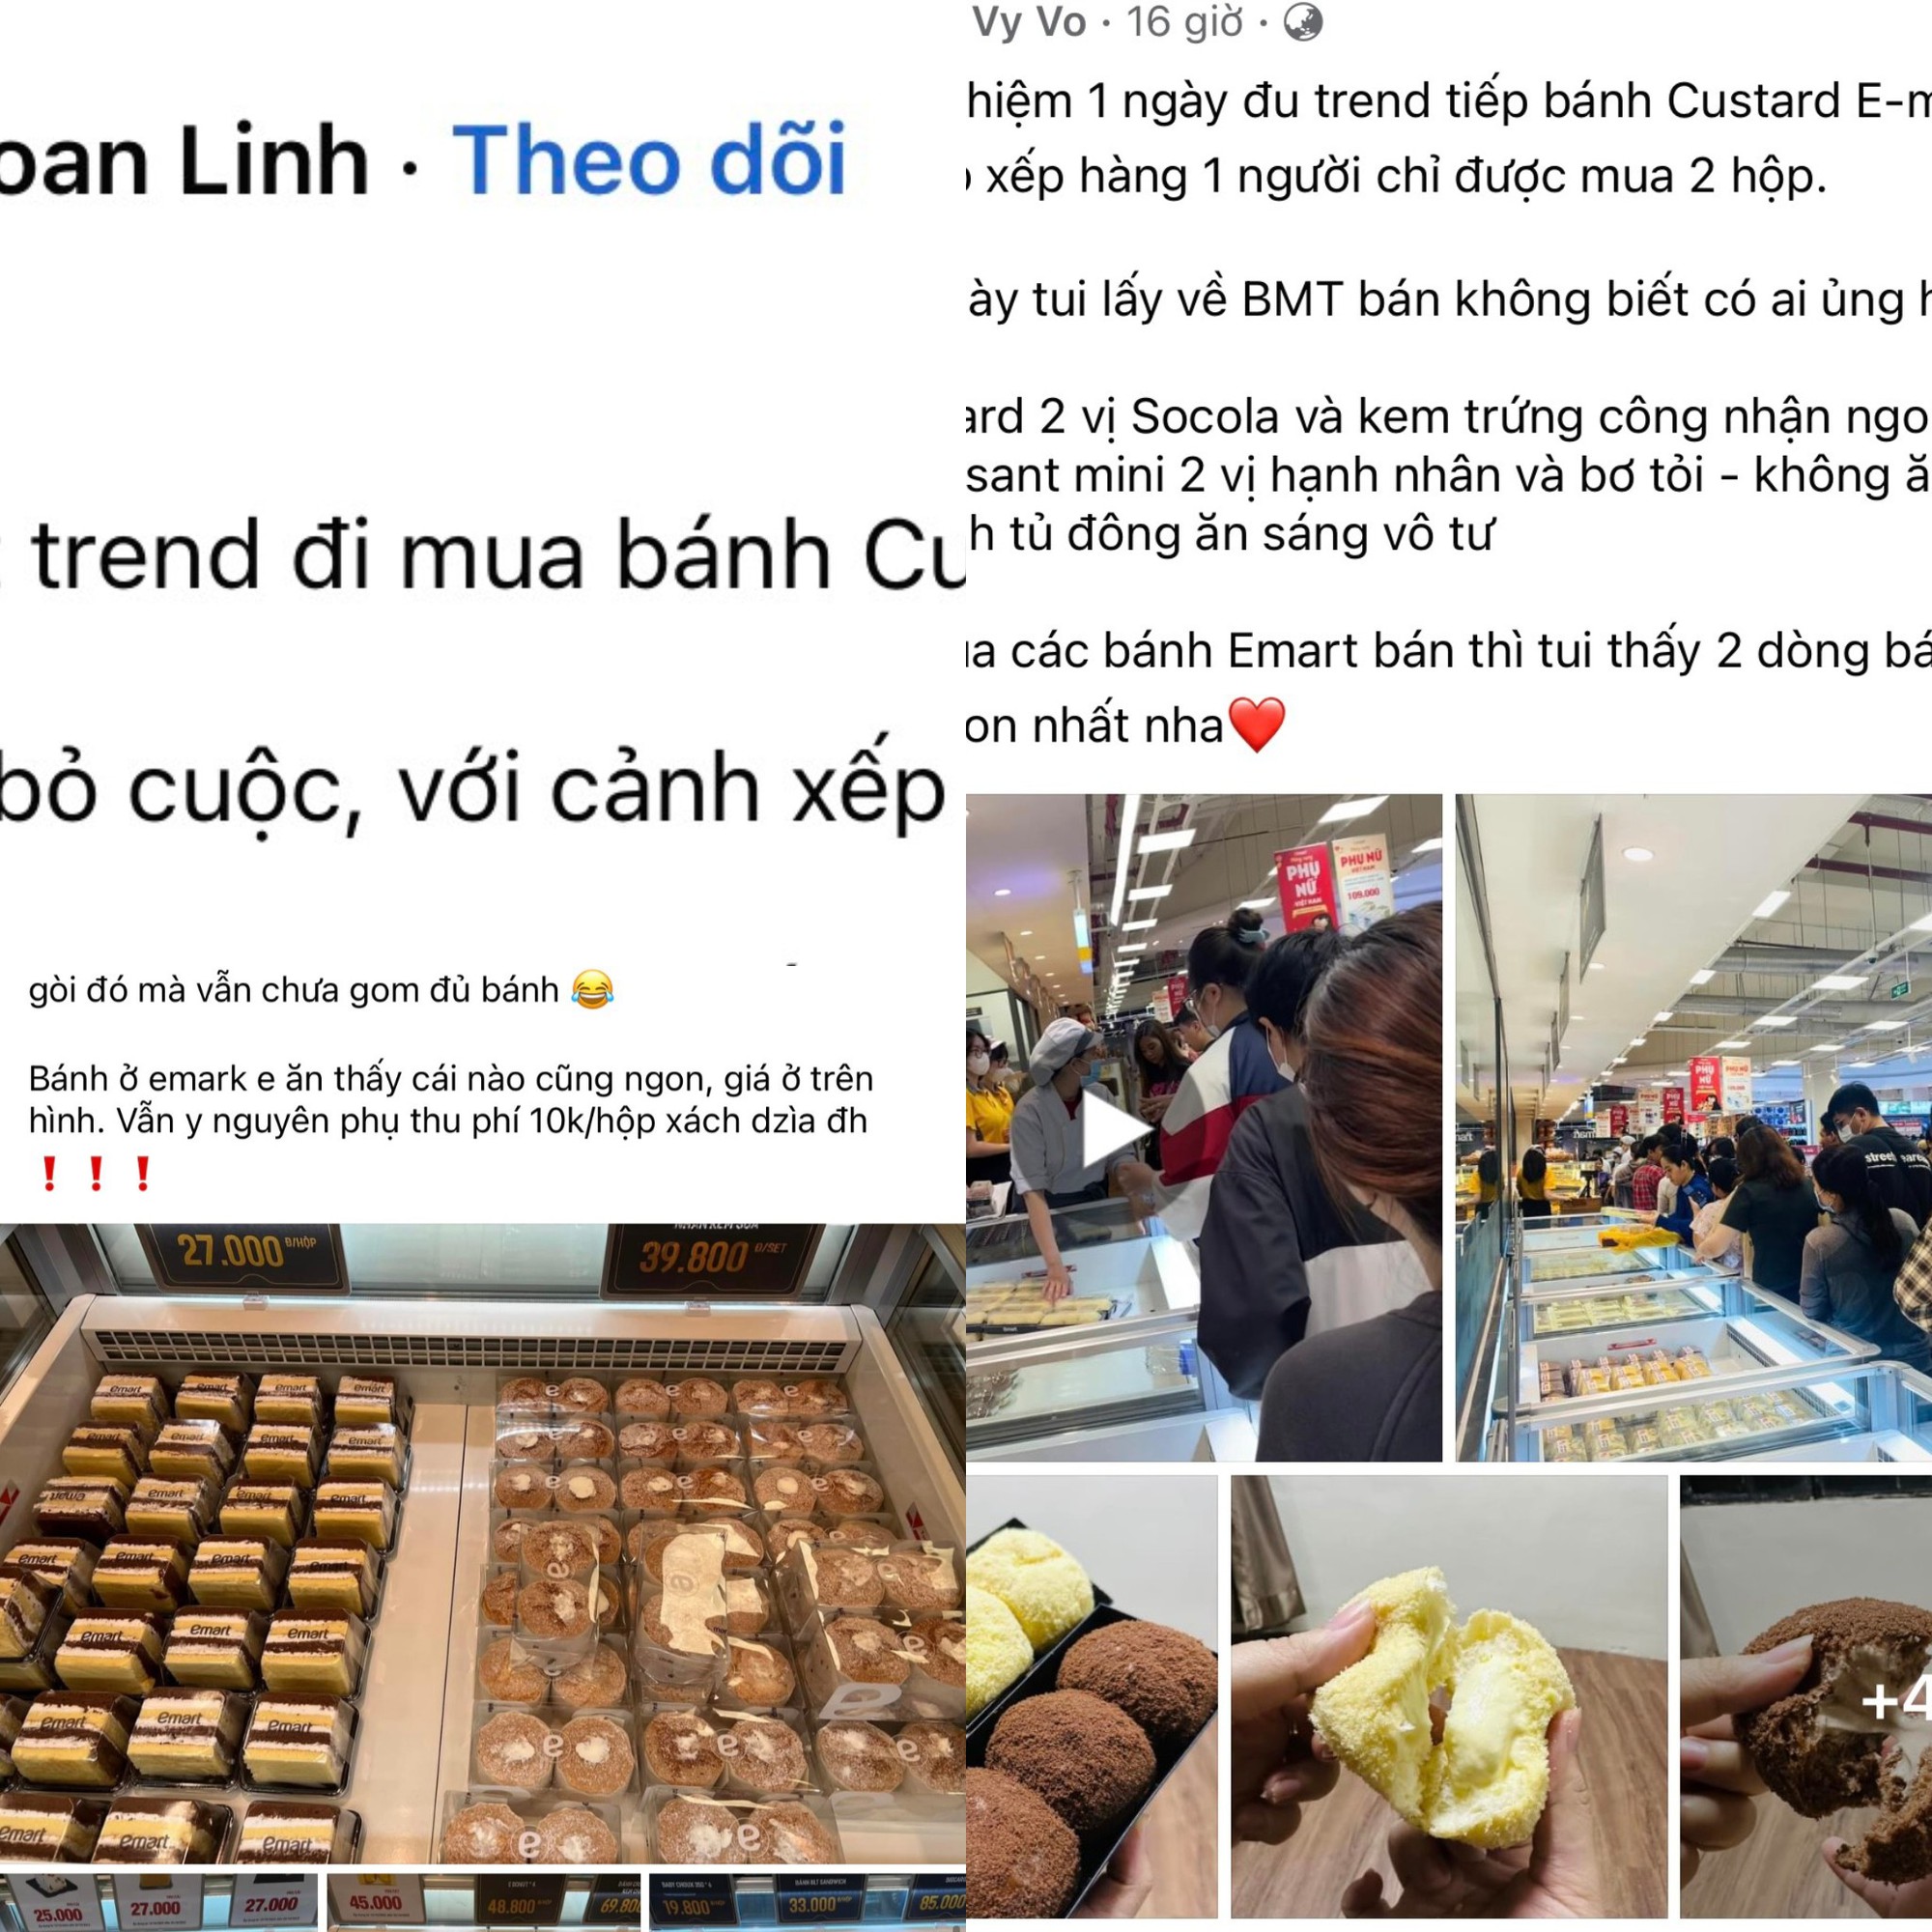 Giới trẻ 'đu trend' mua bánh khi xem mạng xã hội: Vì tò mò hay phải theo xu thế? - Ảnh 1.